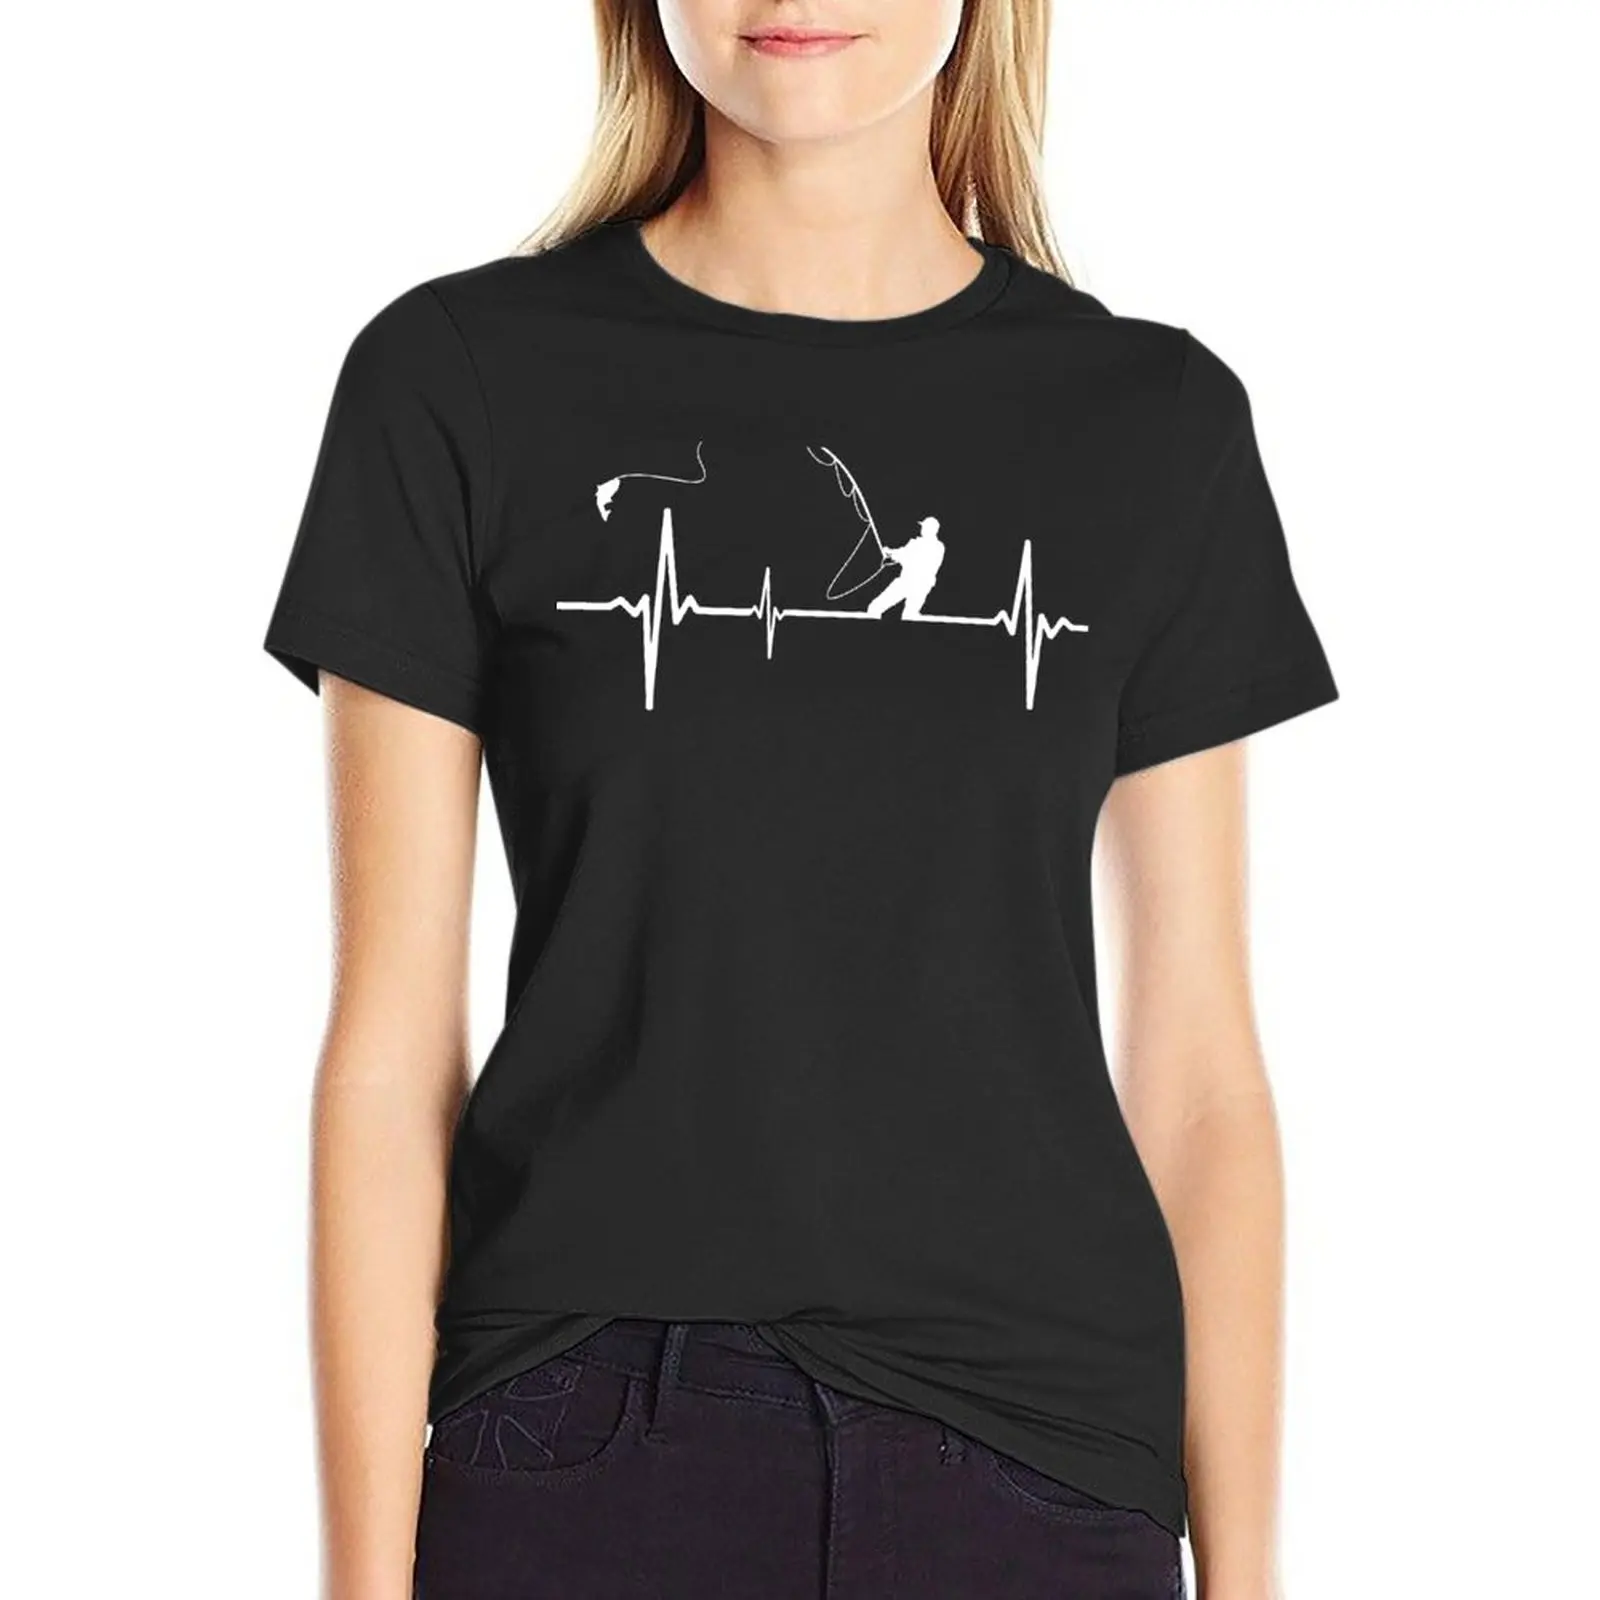 Футболка с сердцебиением для рыбалки, футболки, футболки с графическим рисунком, женское платье-футболка